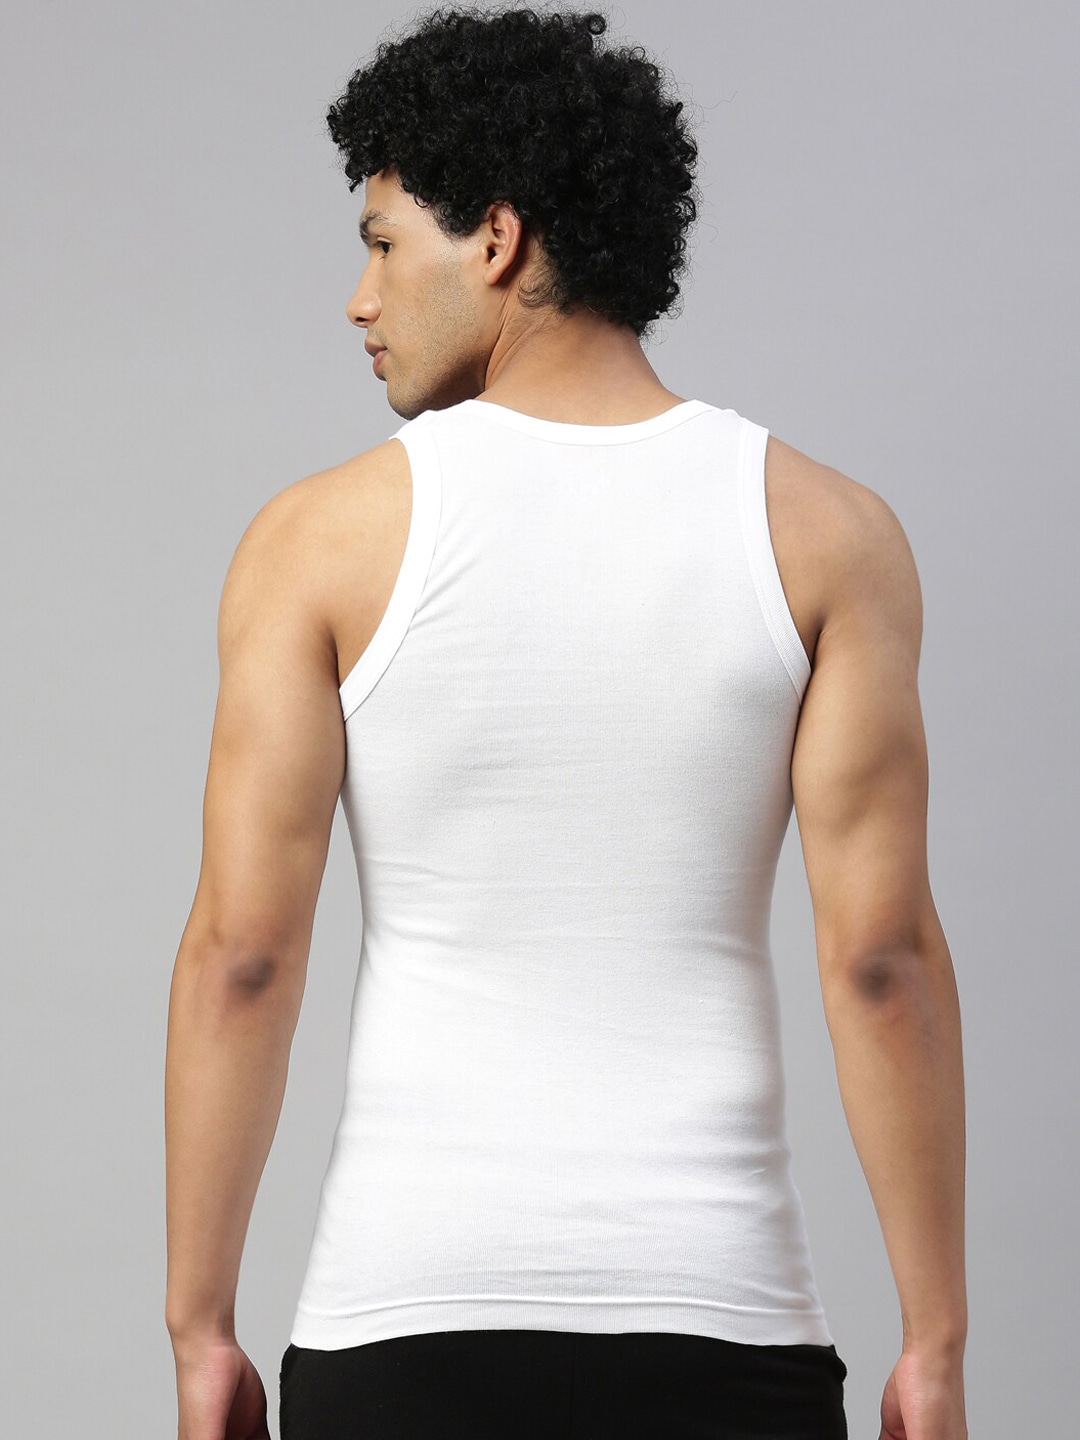 Clothing Innerwear Vests | DIXCY SCOTT MAXIMUS Men Pack Of 2 White Cotton Innerwear Vests MAXV-002-STRIKER VEST-P2 - XQ47103